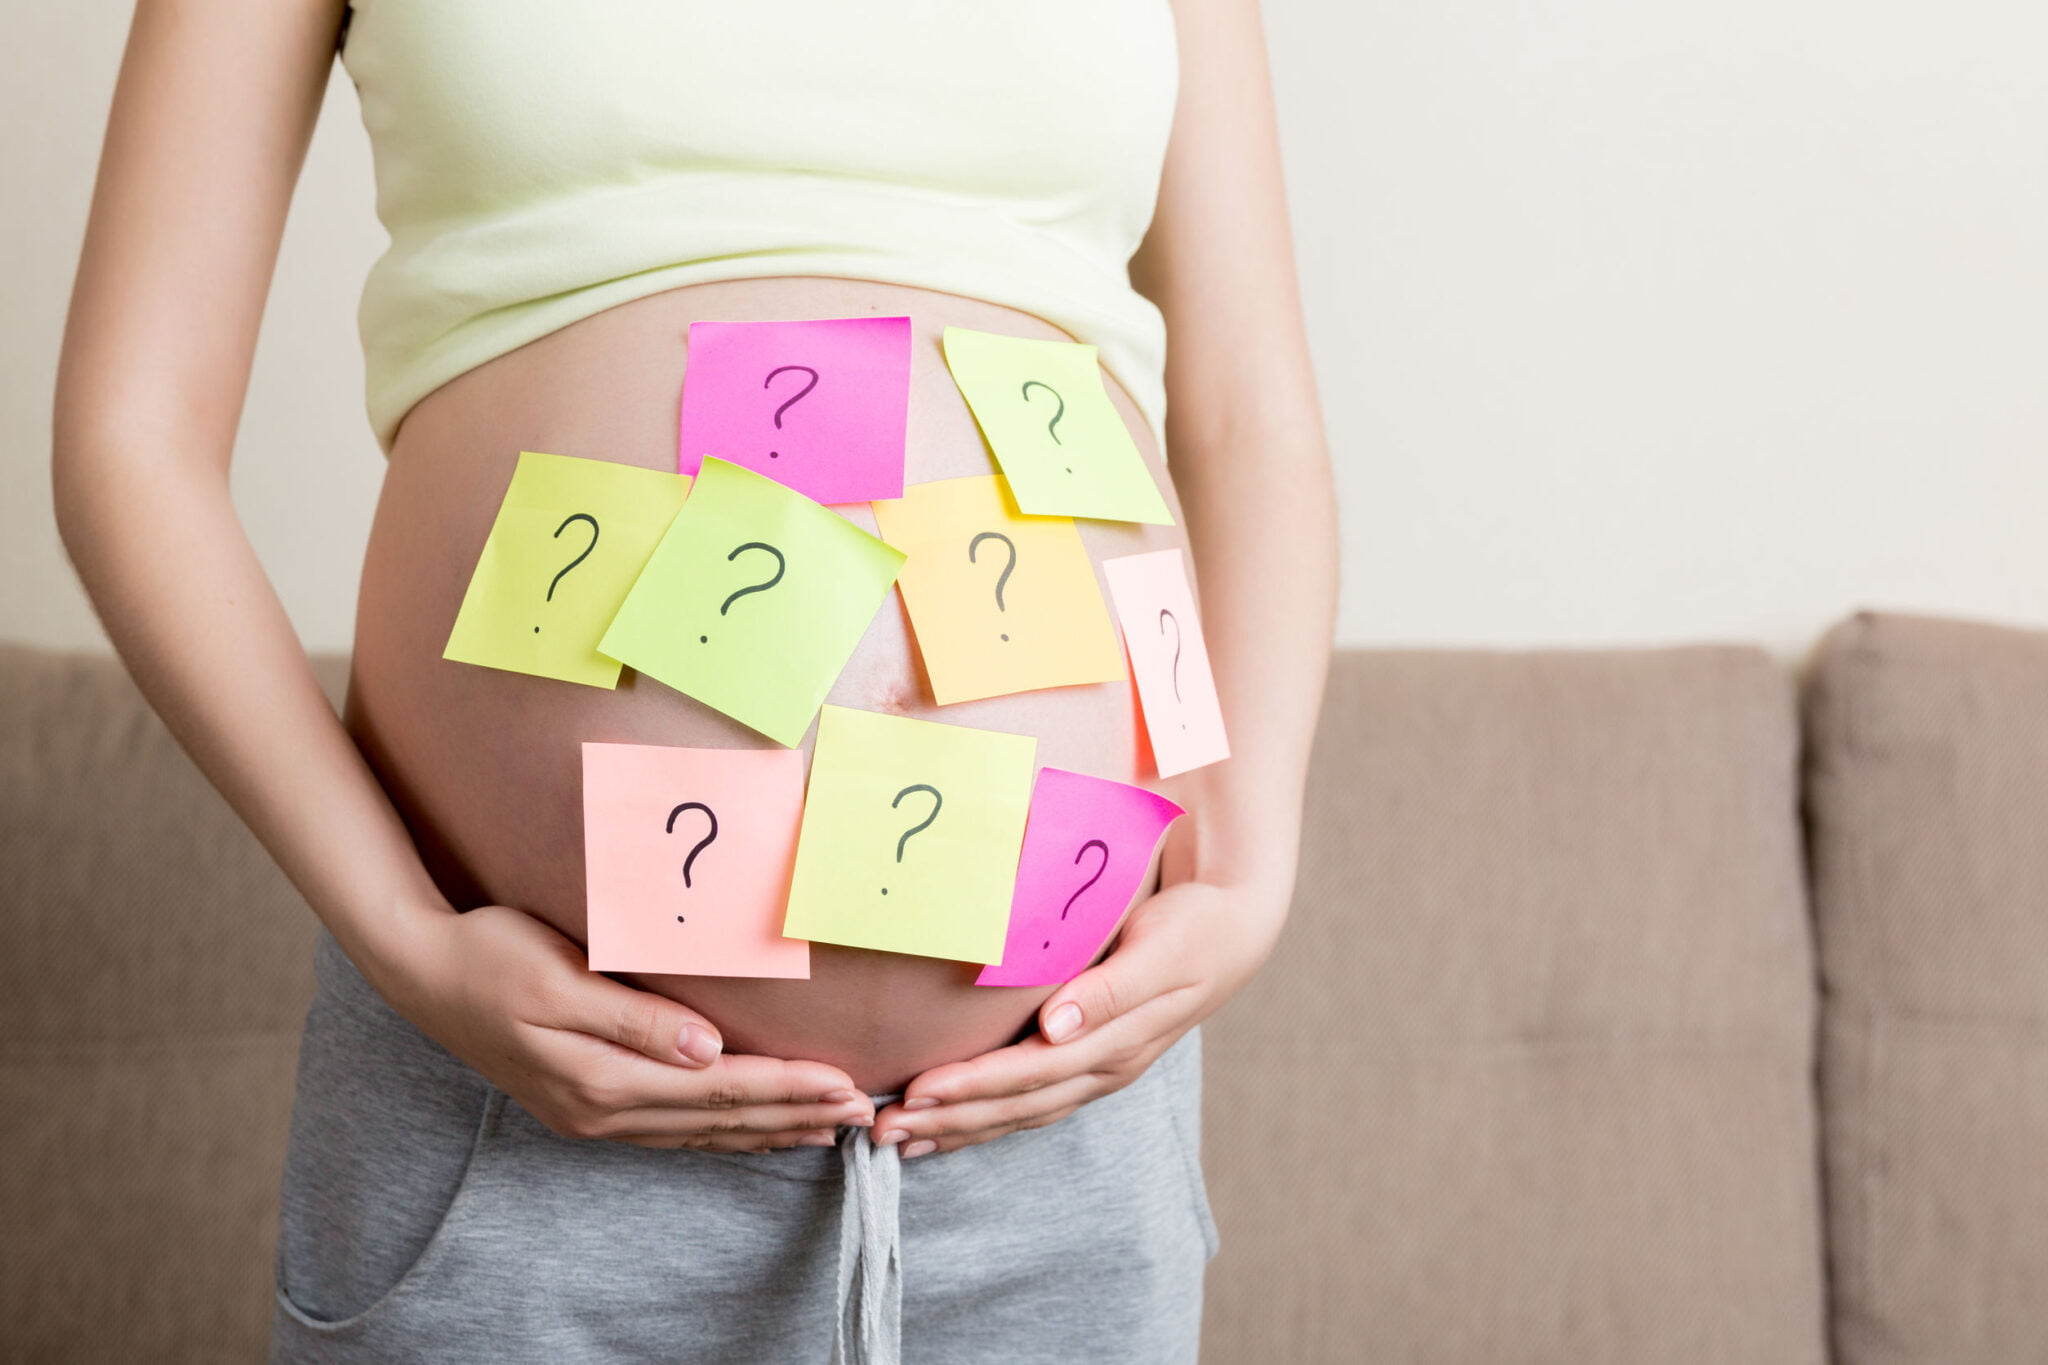 Baby weetjes; meer dan 100 bizarre, grappige of interessante wist-je-datjes ook over zwangerschap. Super handig voor een quiz of babyshower. - Mamaliefde.nl